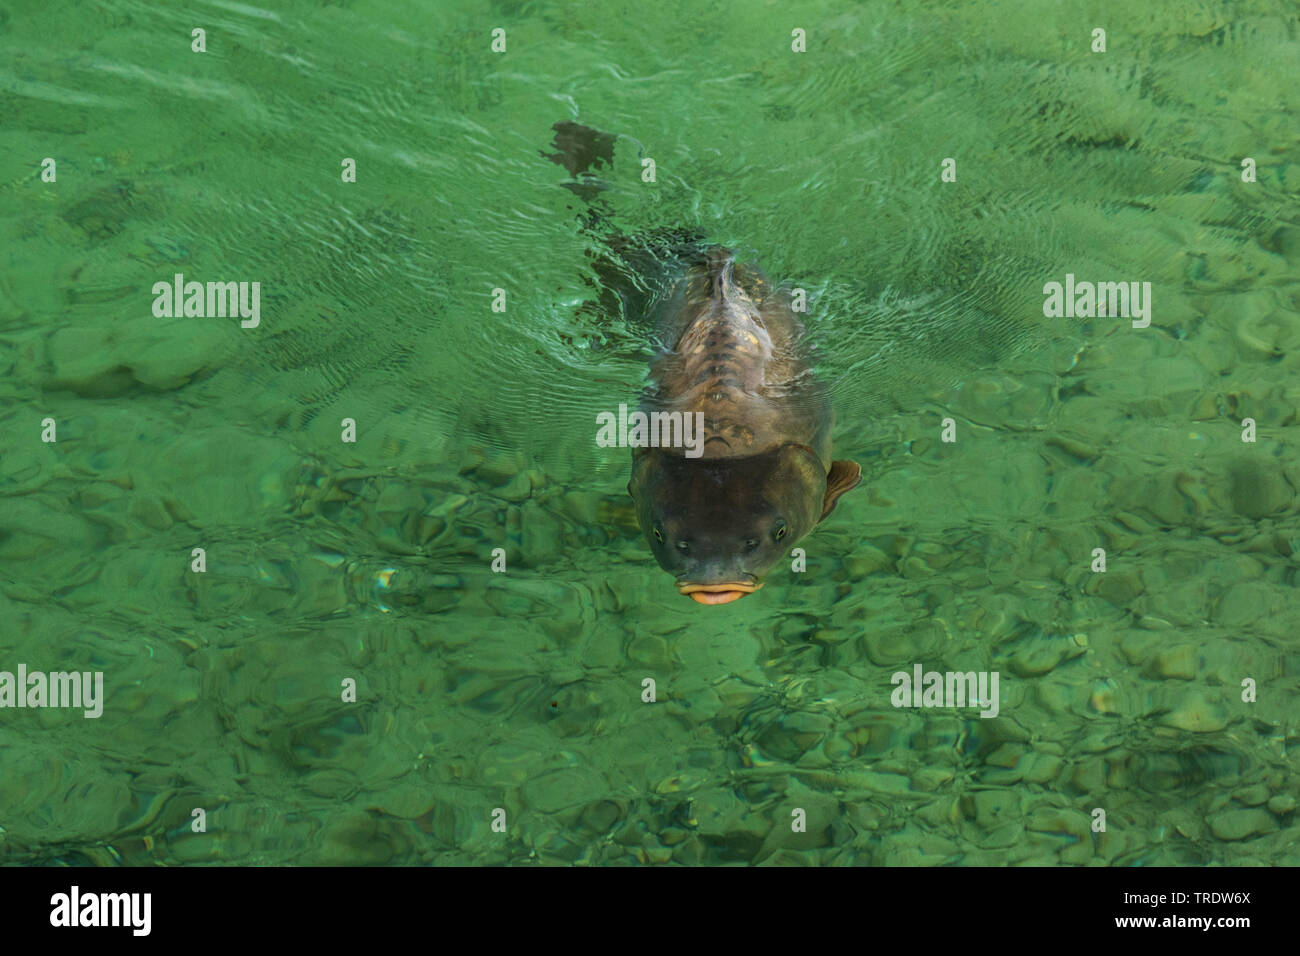 La carpe, la carpe commune, la carpe (Cyprinus carpio), carpe miroir nager à la surface de l'eau, vue de face, l'Allemagne, la Bavière Banque D'Images